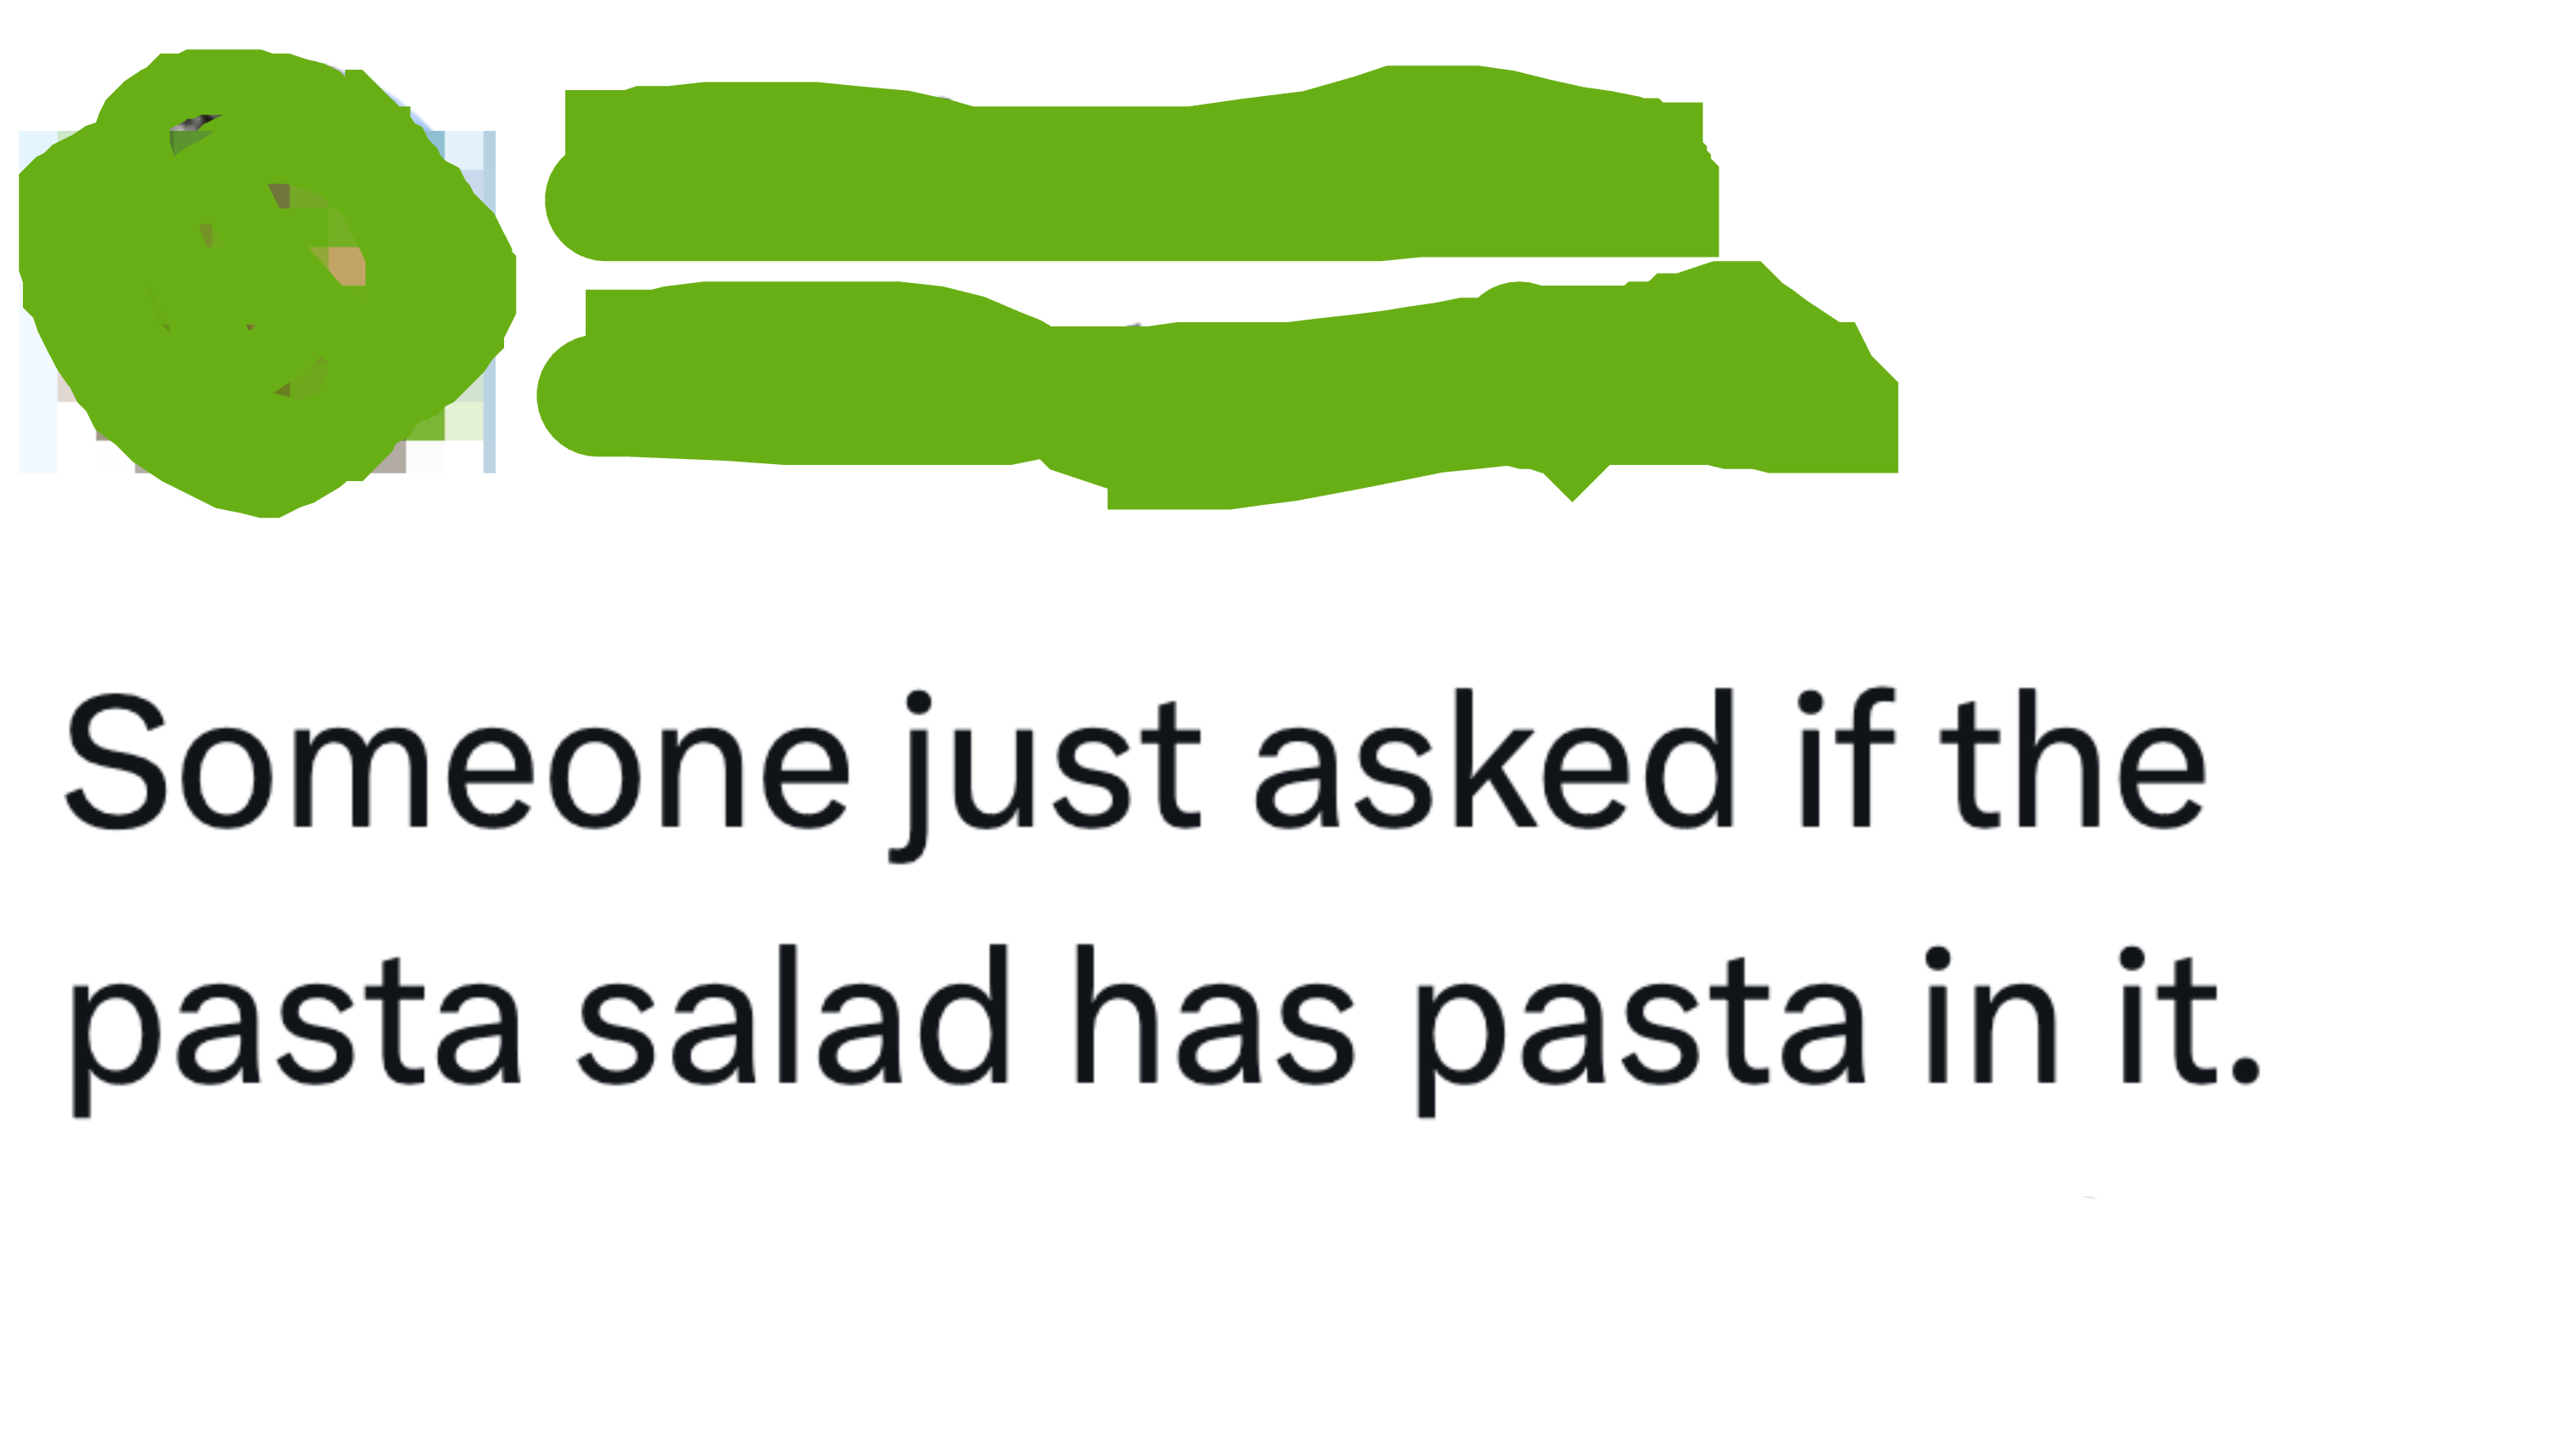 Tweet  joking about someone asking if pasta salad contains pasta